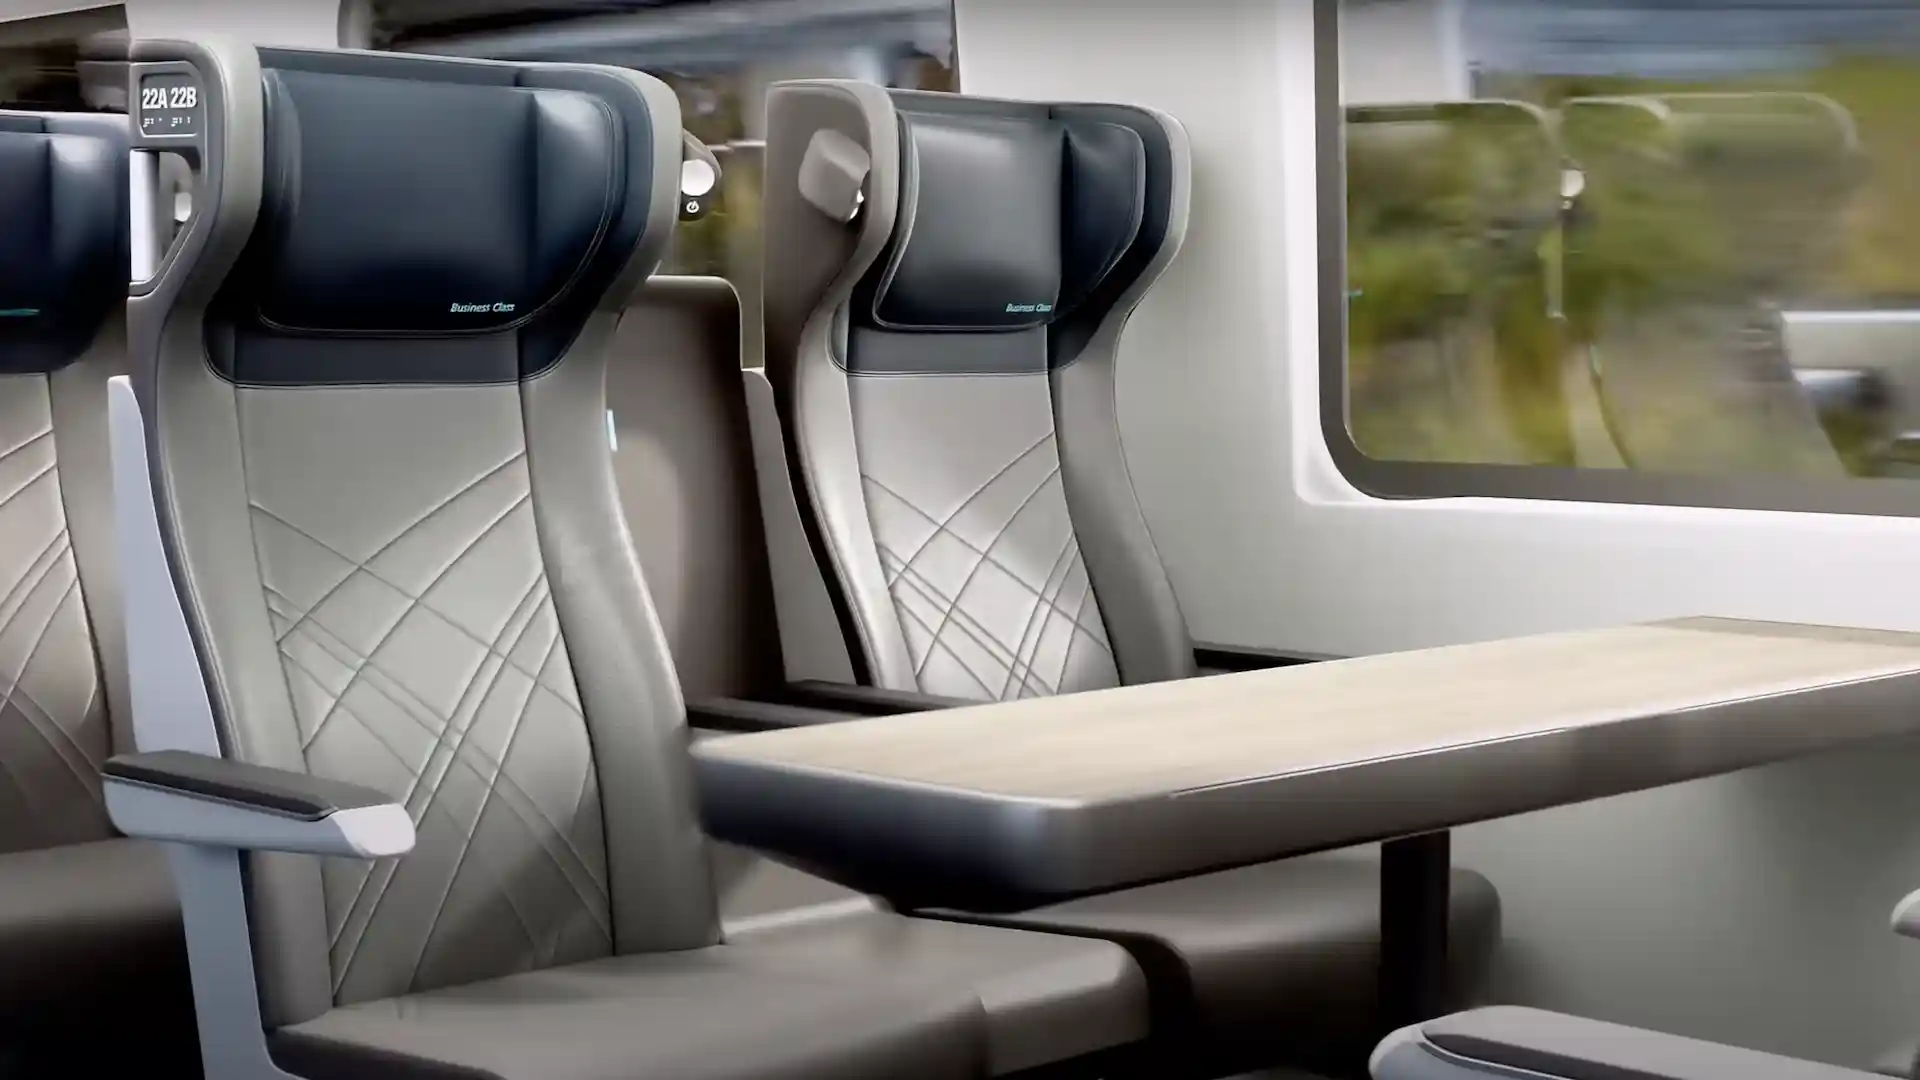 Así son los nuevos trenes Amtrak Airo para viajar por Estados unidos